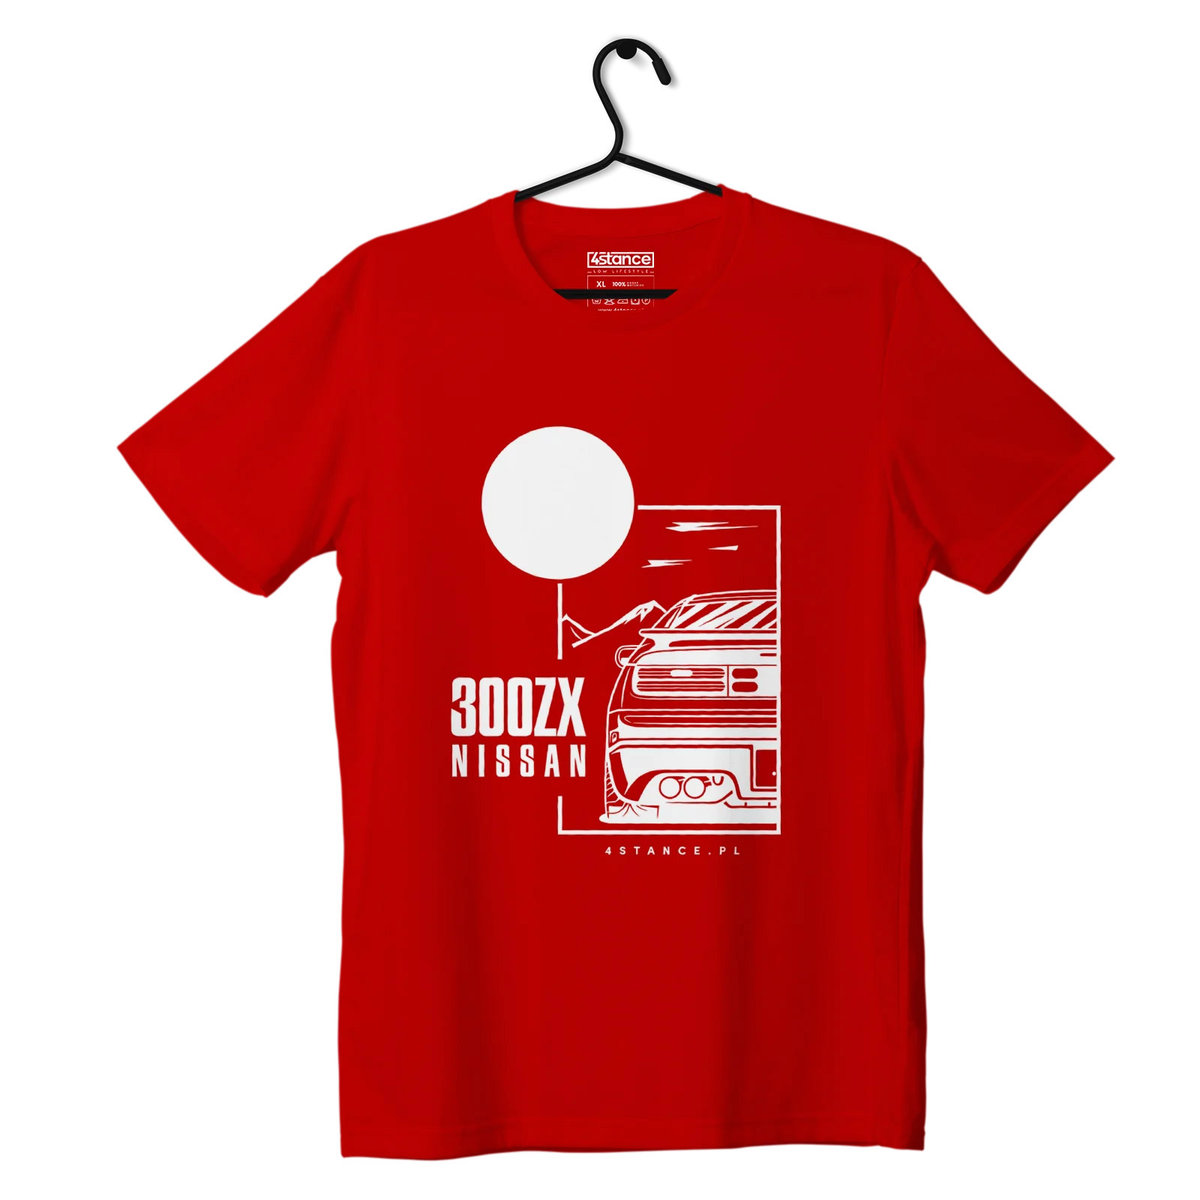 Zdjęcia - Odzież motocyklowa Nissan T-shirt koszulka  300ZX czerwona-S 